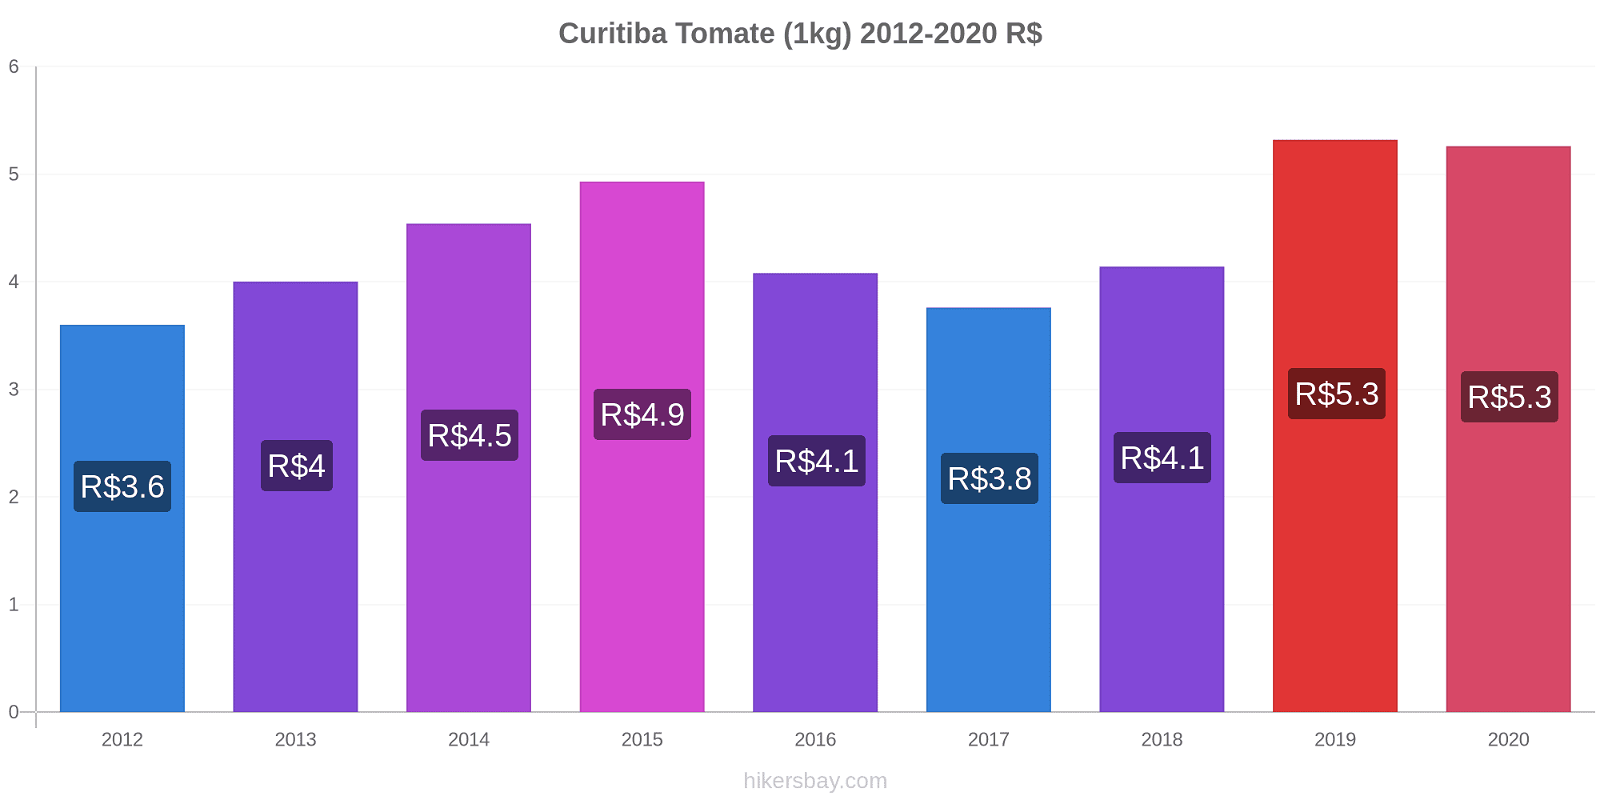 Curitiba variação de preço Tomate (1kg) hikersbay.com